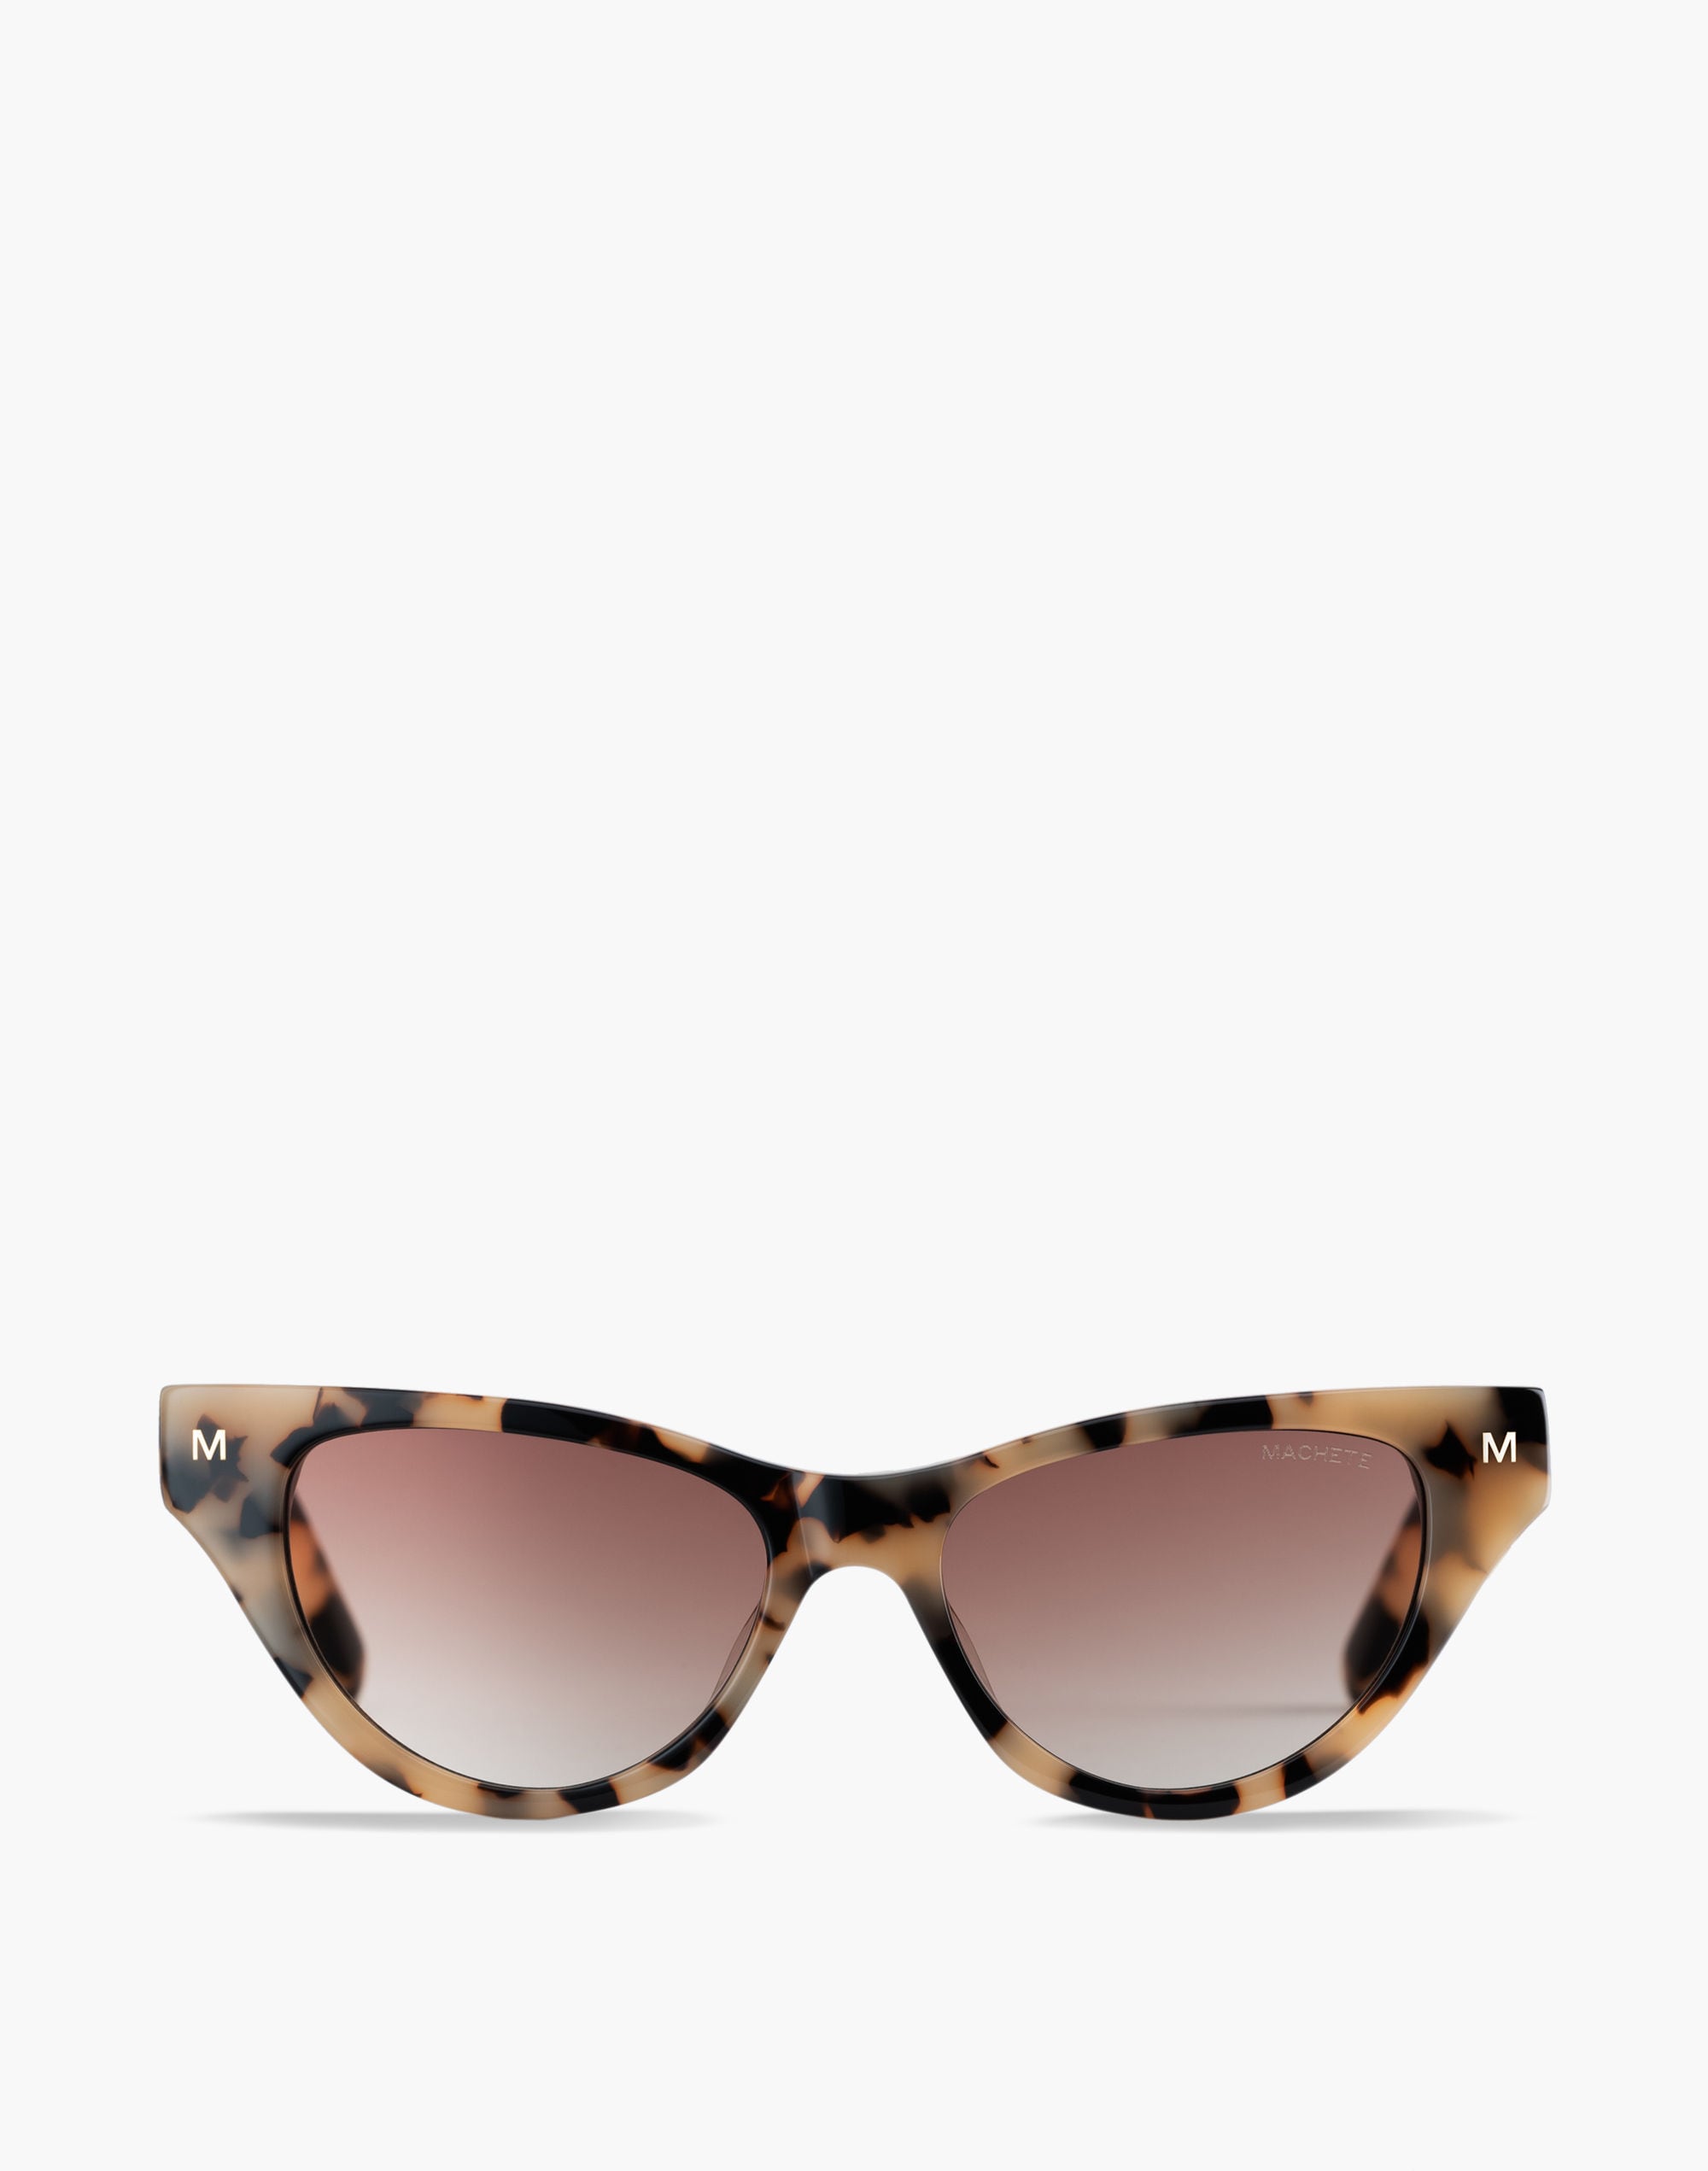 Mw Machete Suzy Sunglasses In Brown